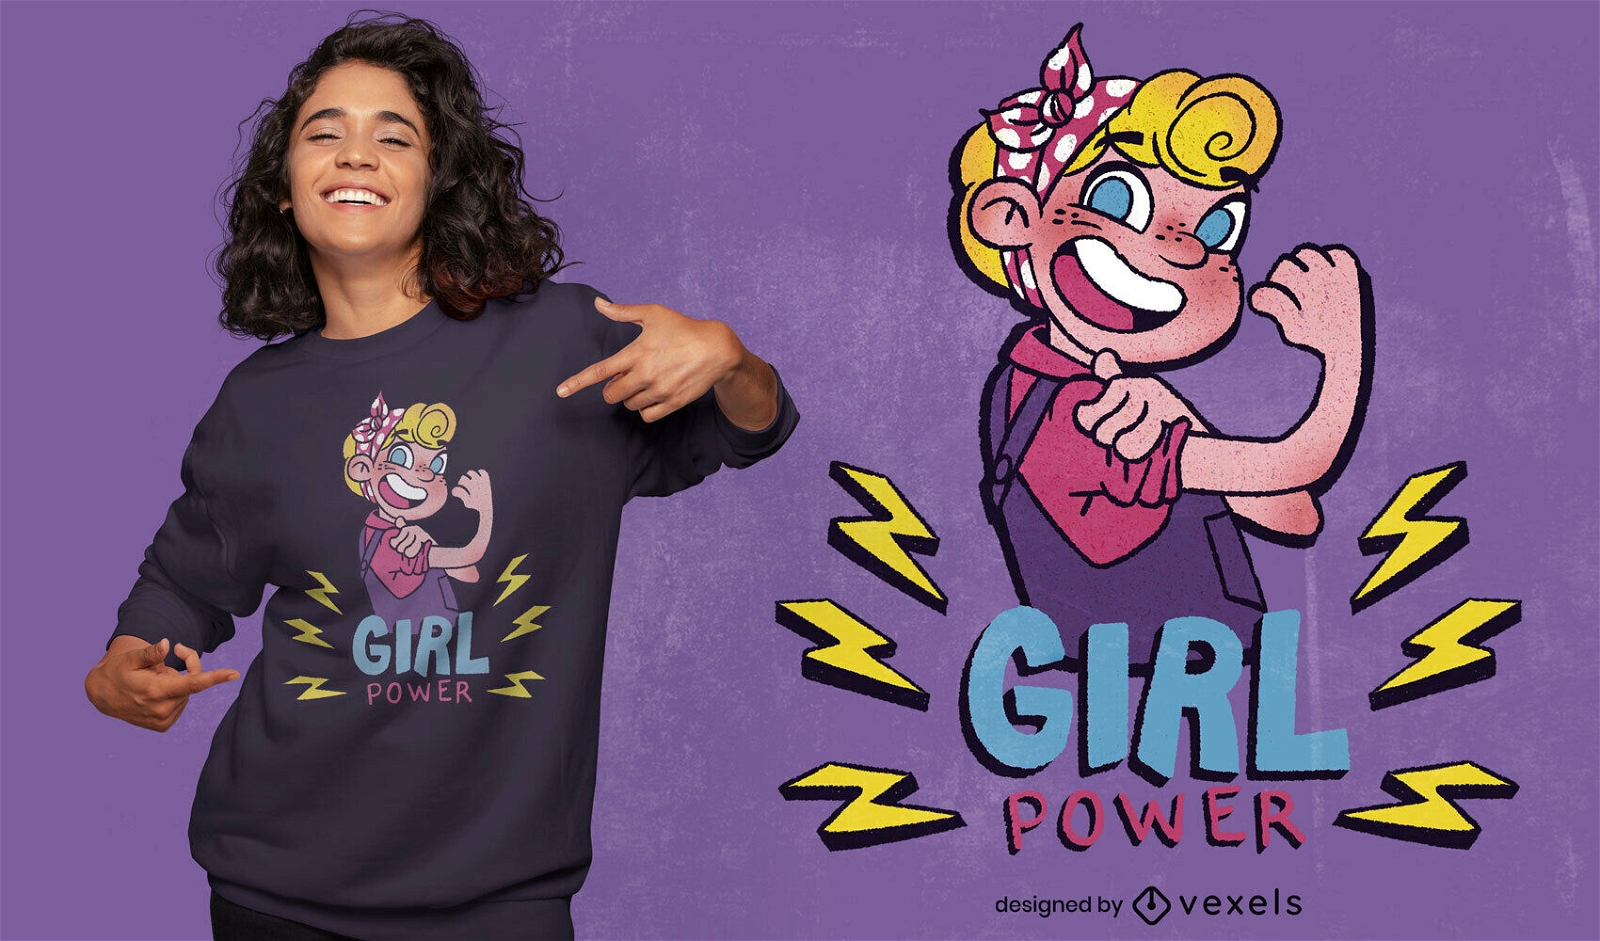 Strong girl power cartoon t-shirt psd